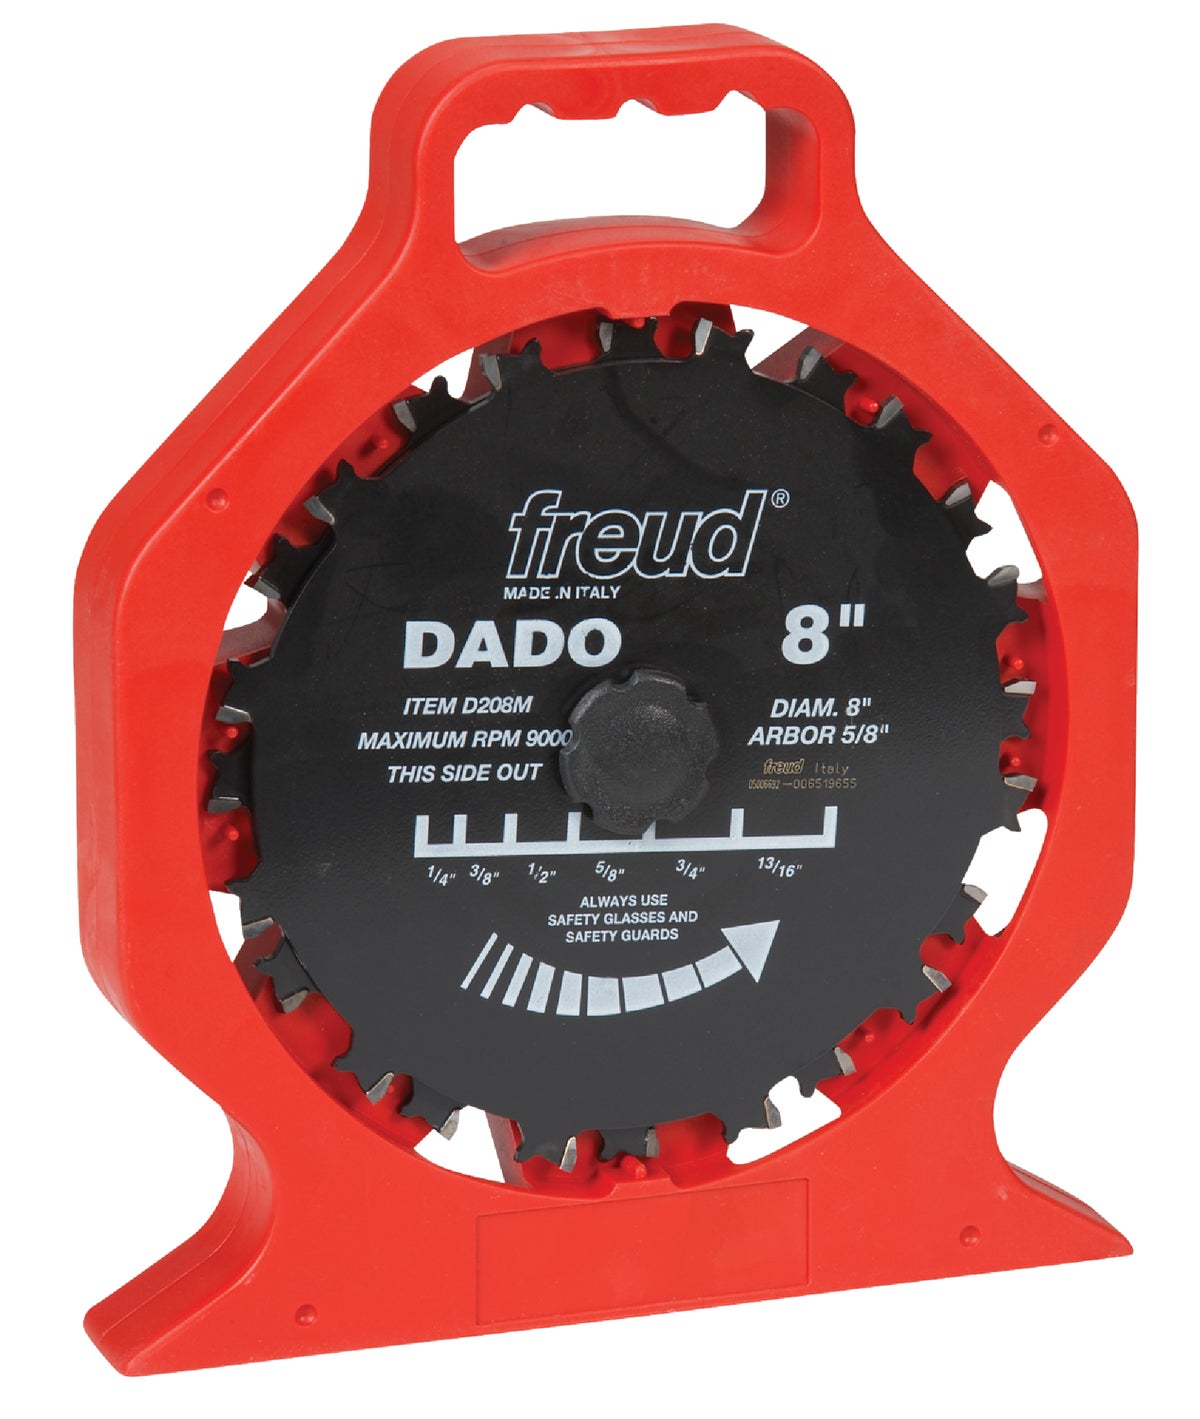 Buy Freud Pro Dado Circular Saw Blade Set